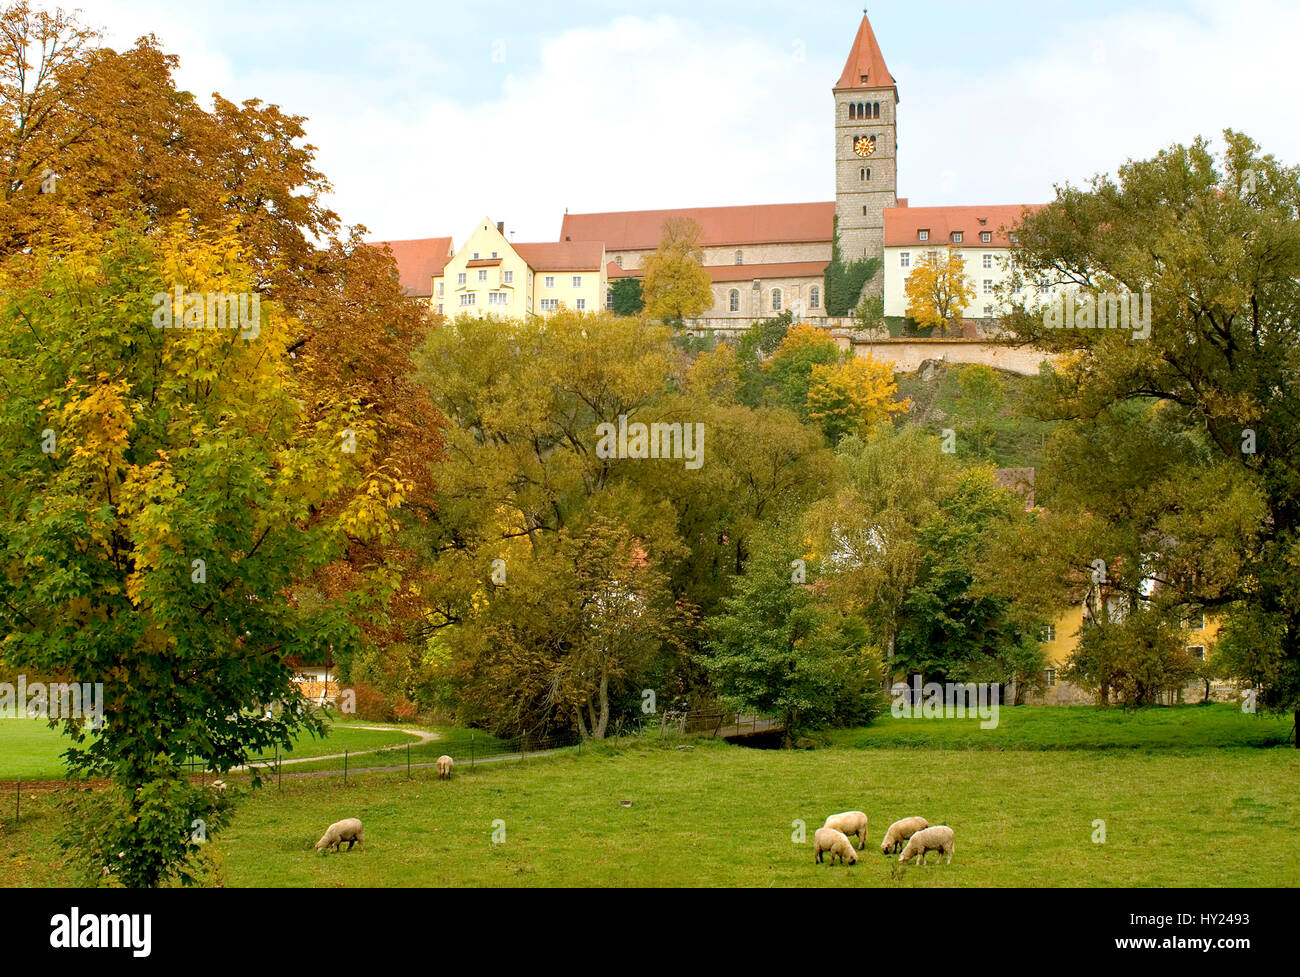 Paysage d'automne près du Château monastère à Kastl dans le Land allemand de Bavière. Vor dem Klosterschloss Herbstlanschaft Romantische Kastl à Baye Banque D'Images